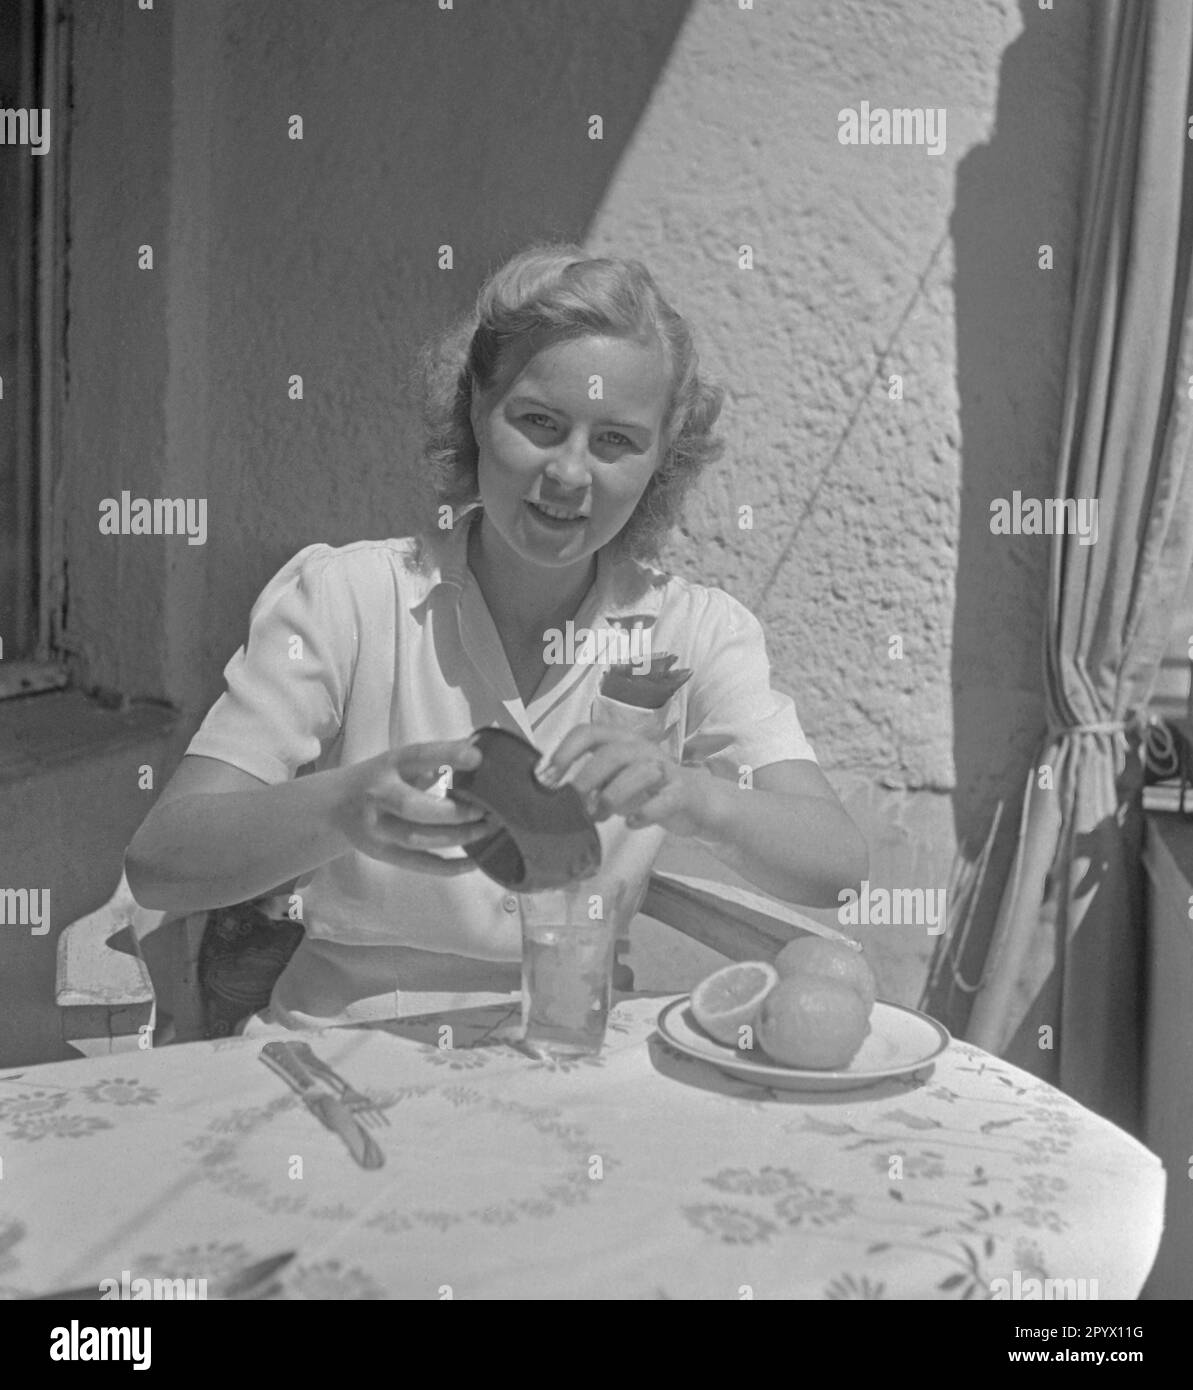 Une jeune femme s'assoit à la table et verse le jus d'un presse-jus de citron dans un verre, devant elle sont des citrons sur une assiette. Banque D'Images